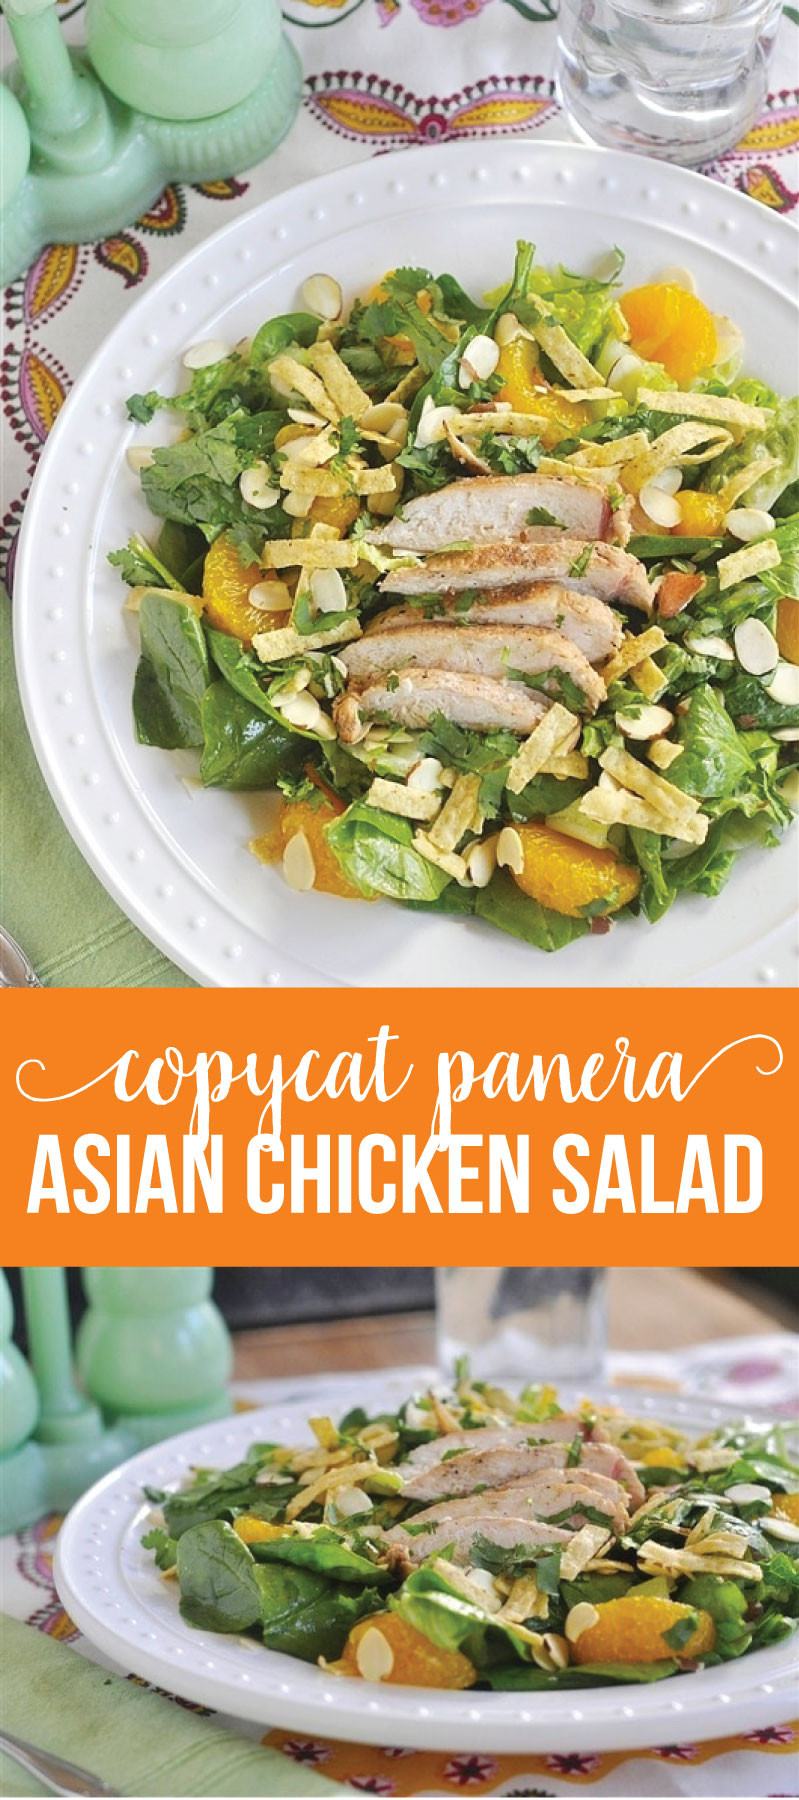 Asian Chicken Salad Panera
 Copycat Panera Asian Chicken Salad